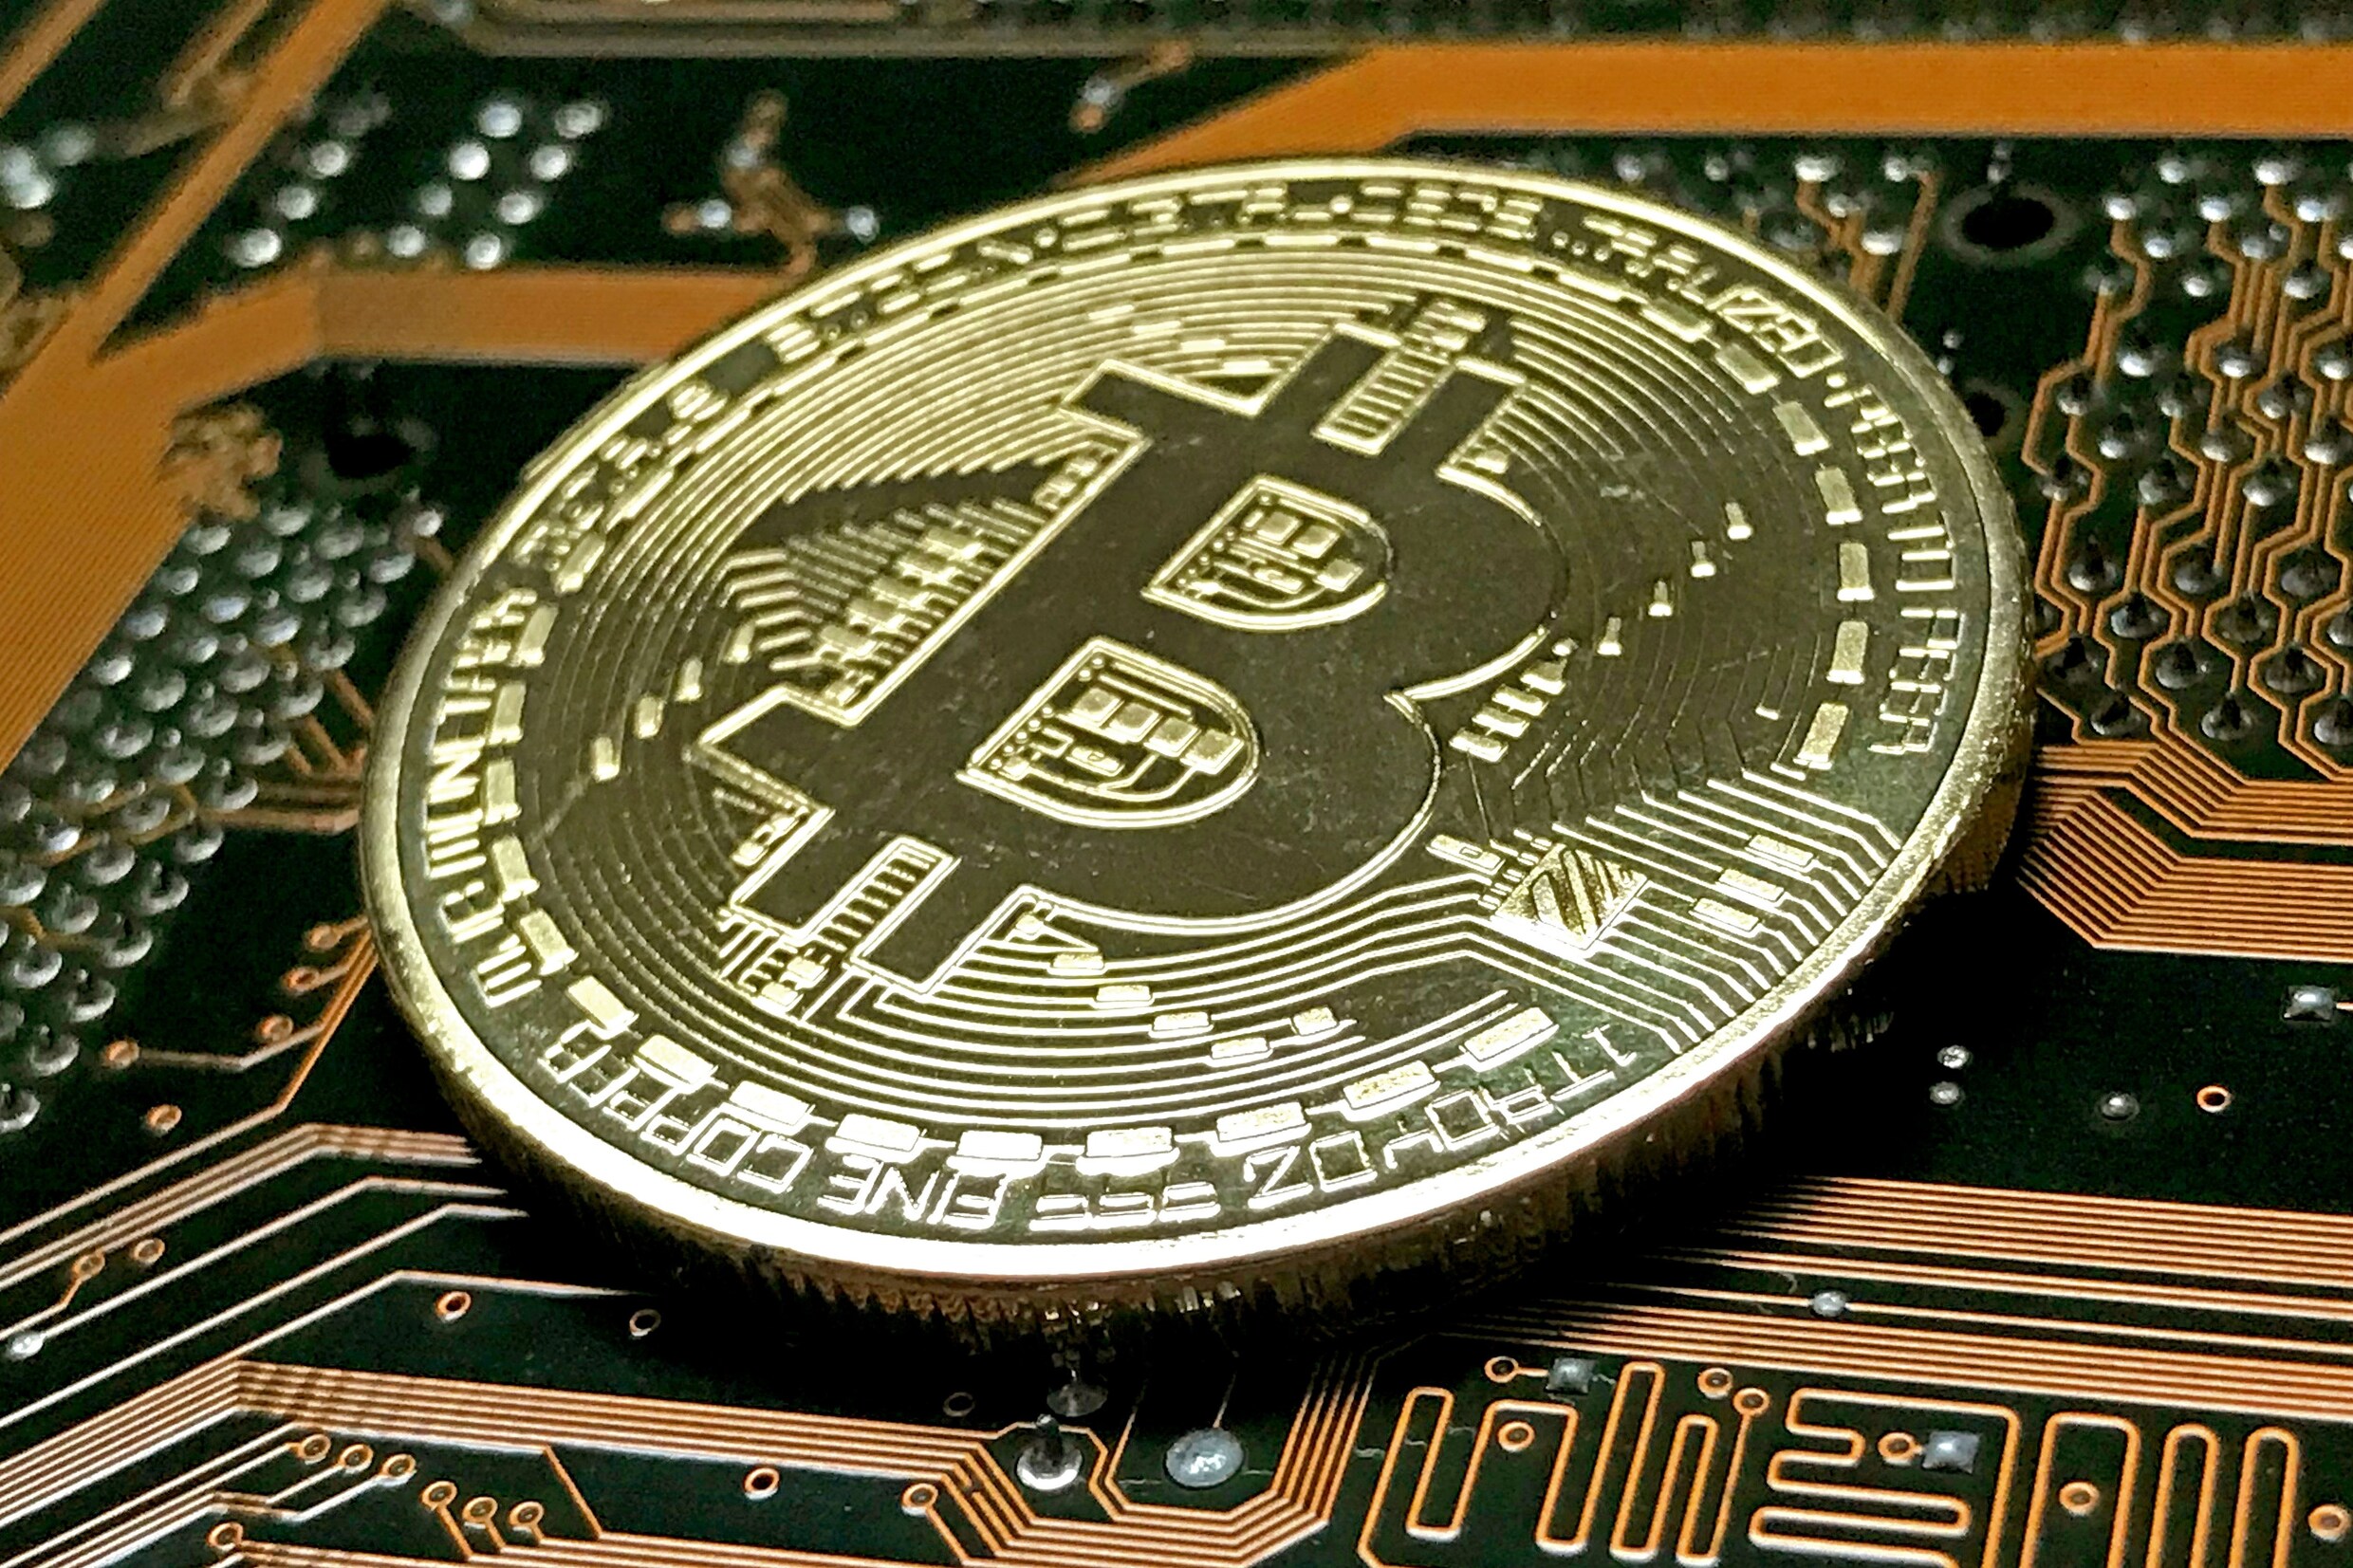 Chaos op cryptomarkt compleet: bitcoin opnieuw in vrije val, andere munten crashen mee